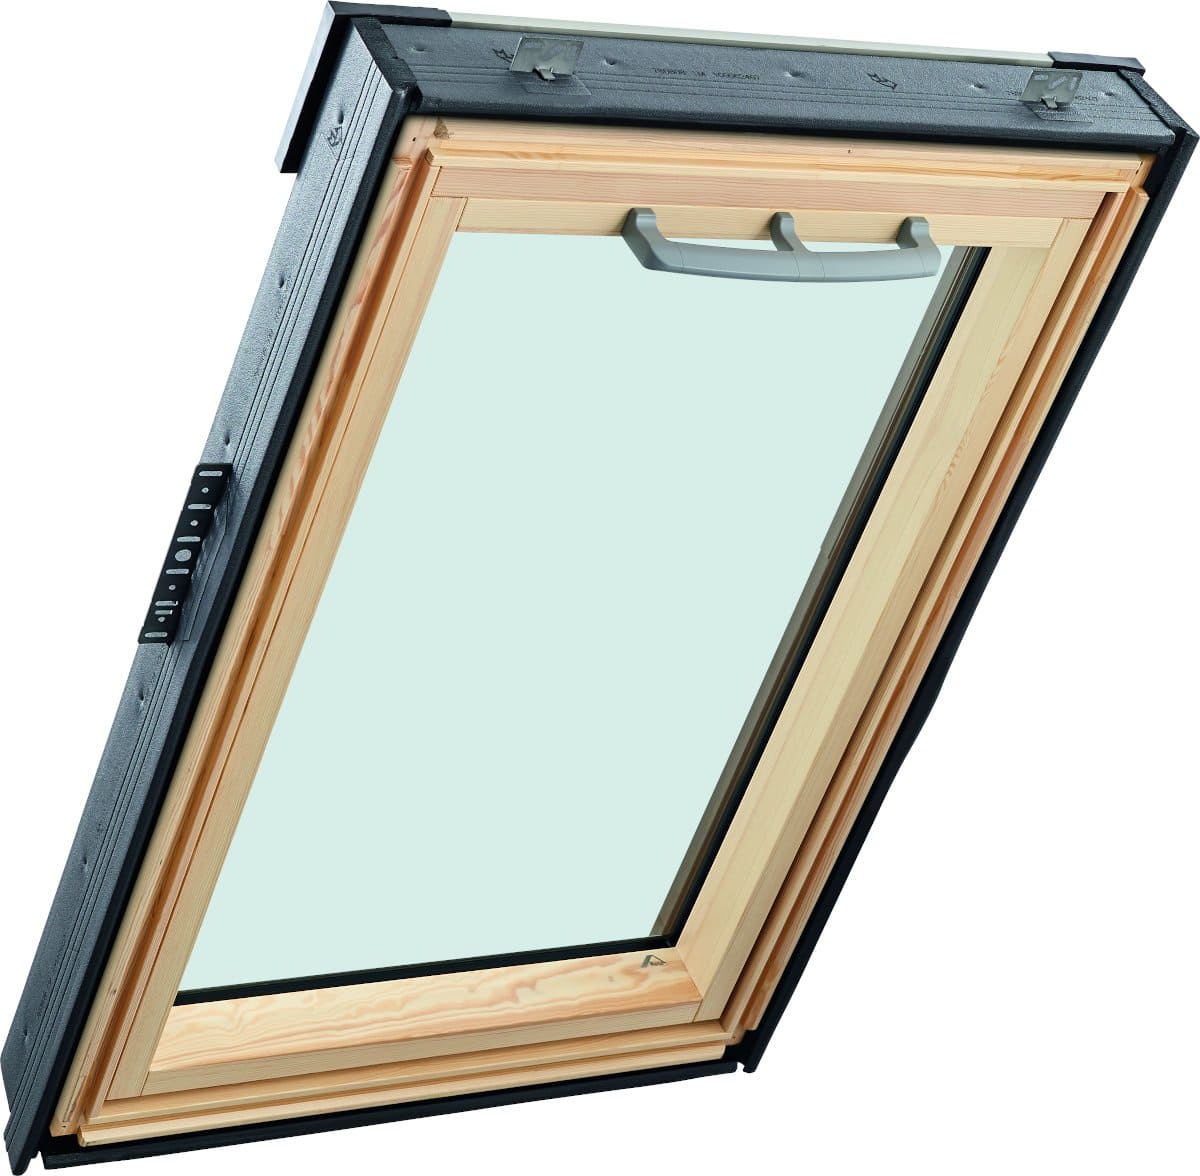 Окно мансардное деревянное с верхней ручкой RotoQ Q43A H200. 2 камерный стеклопакет. Двойной ThermoBlock WD.